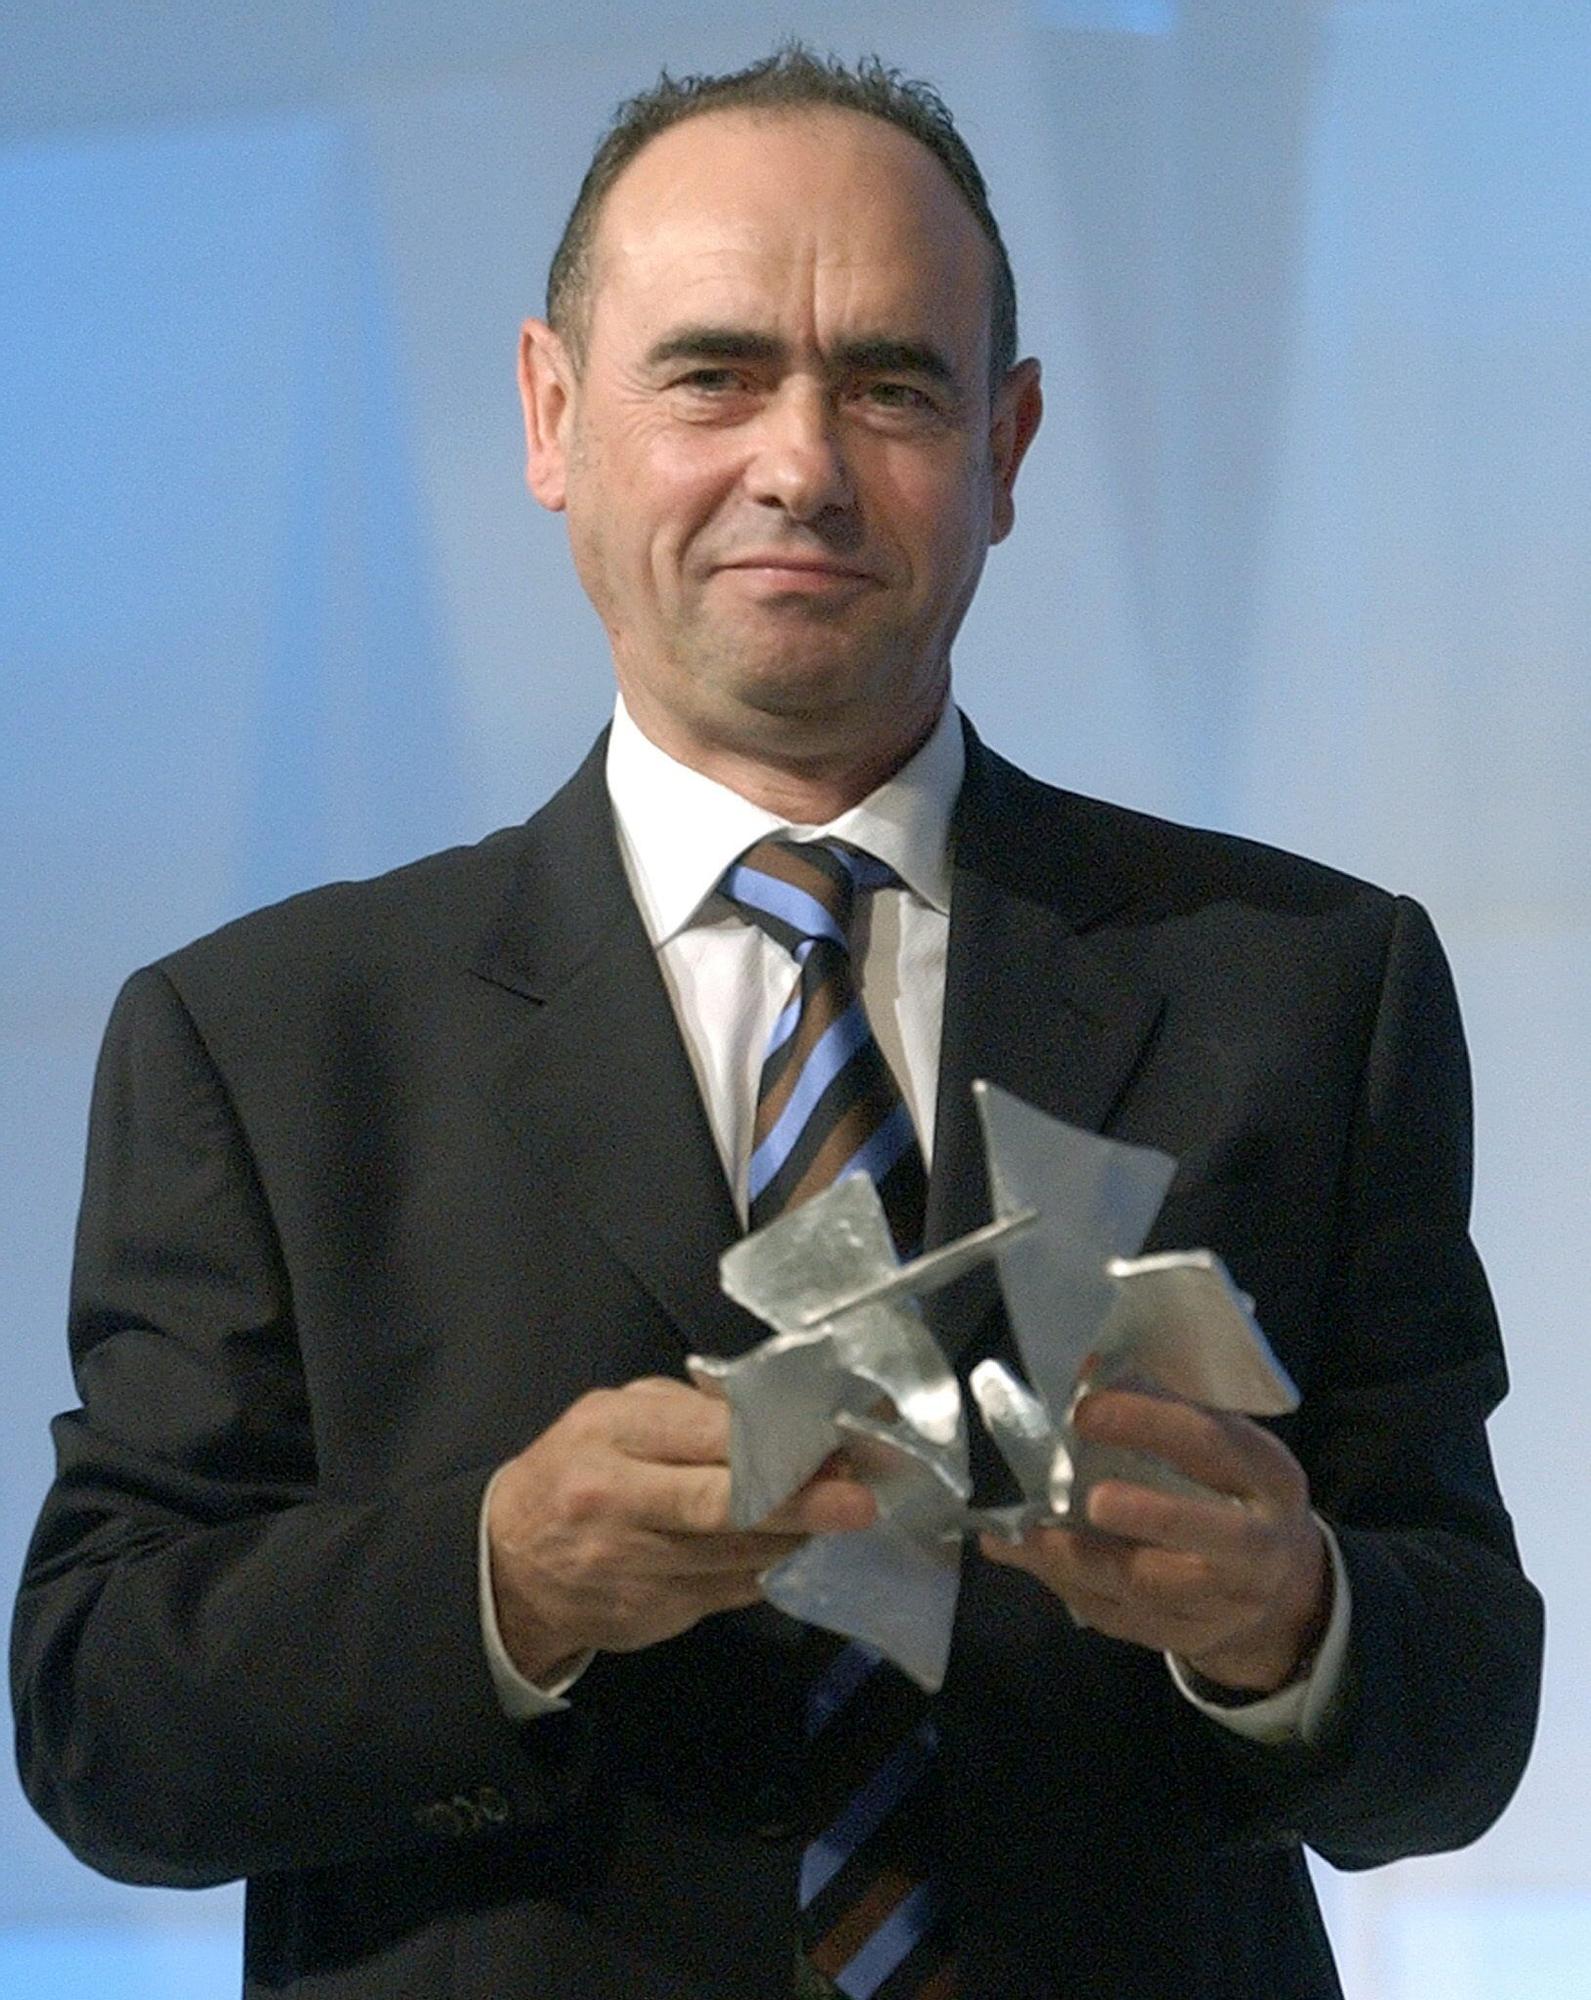 El subdirector General del Faro de Vigo posa con el Premio Galicia de Comunicación recibido en Santiago de Compostela Lavandeira JR 2004.jpg